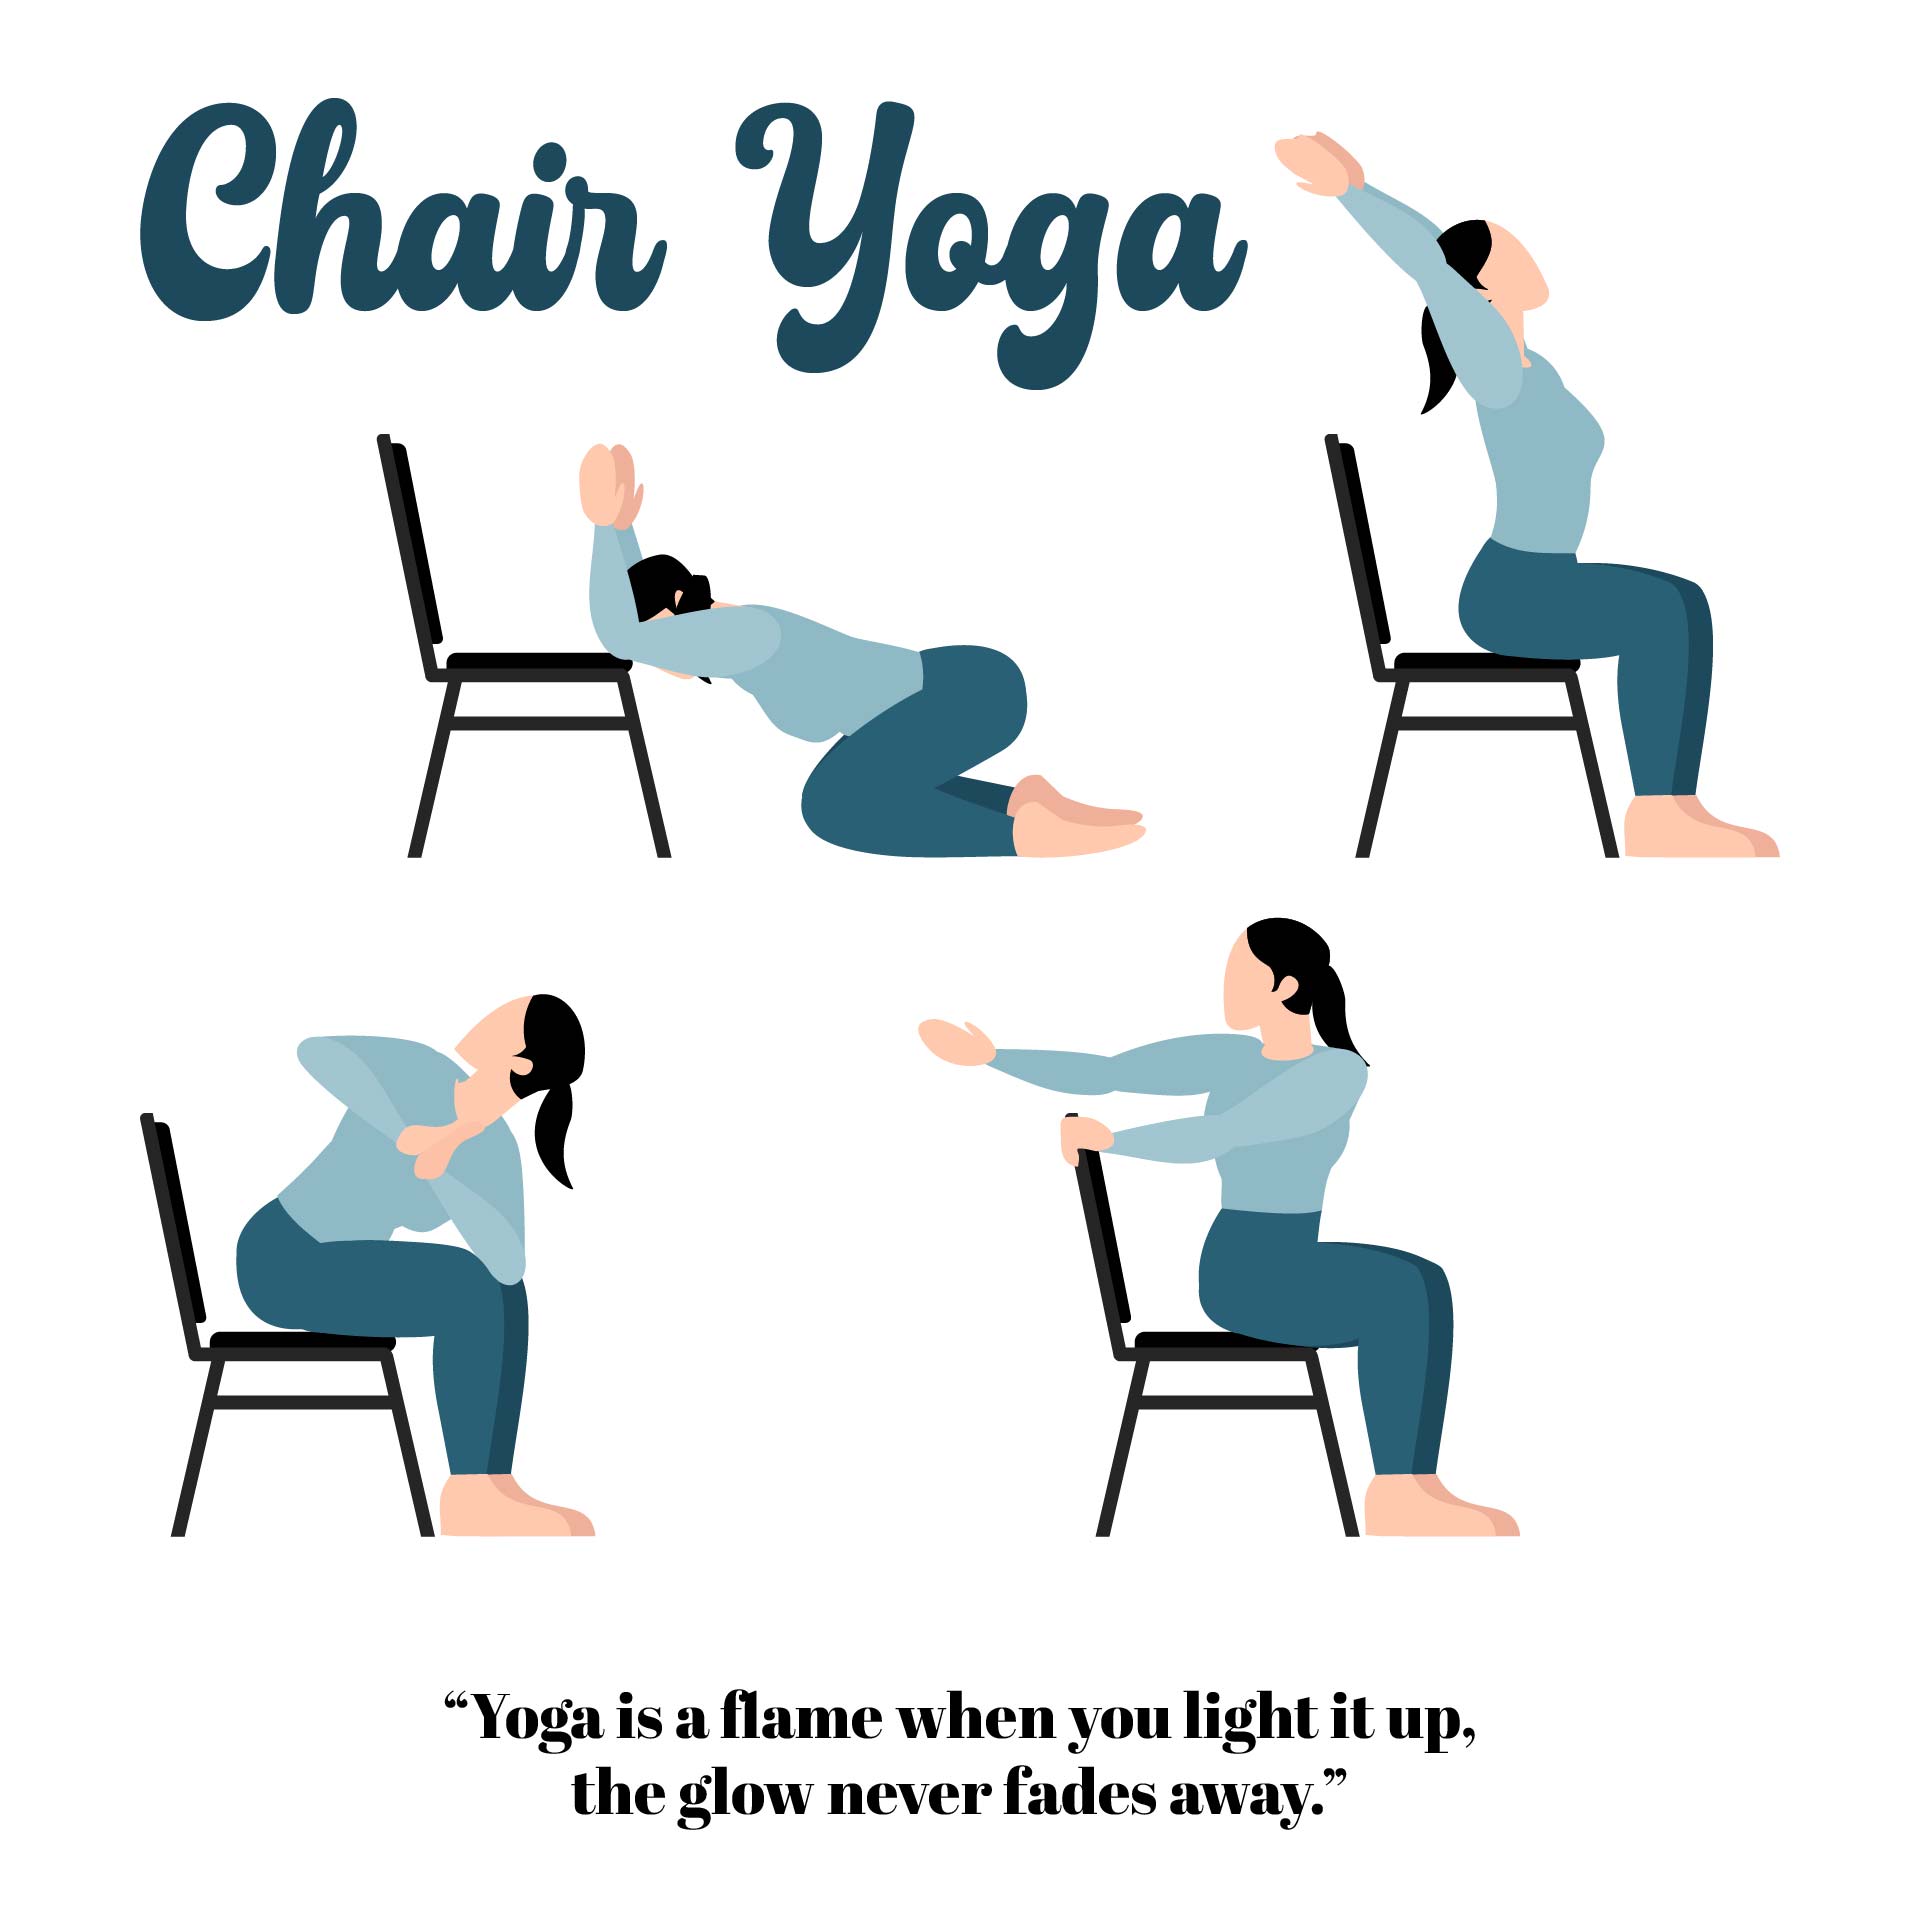 Printable chair yoga exercises 